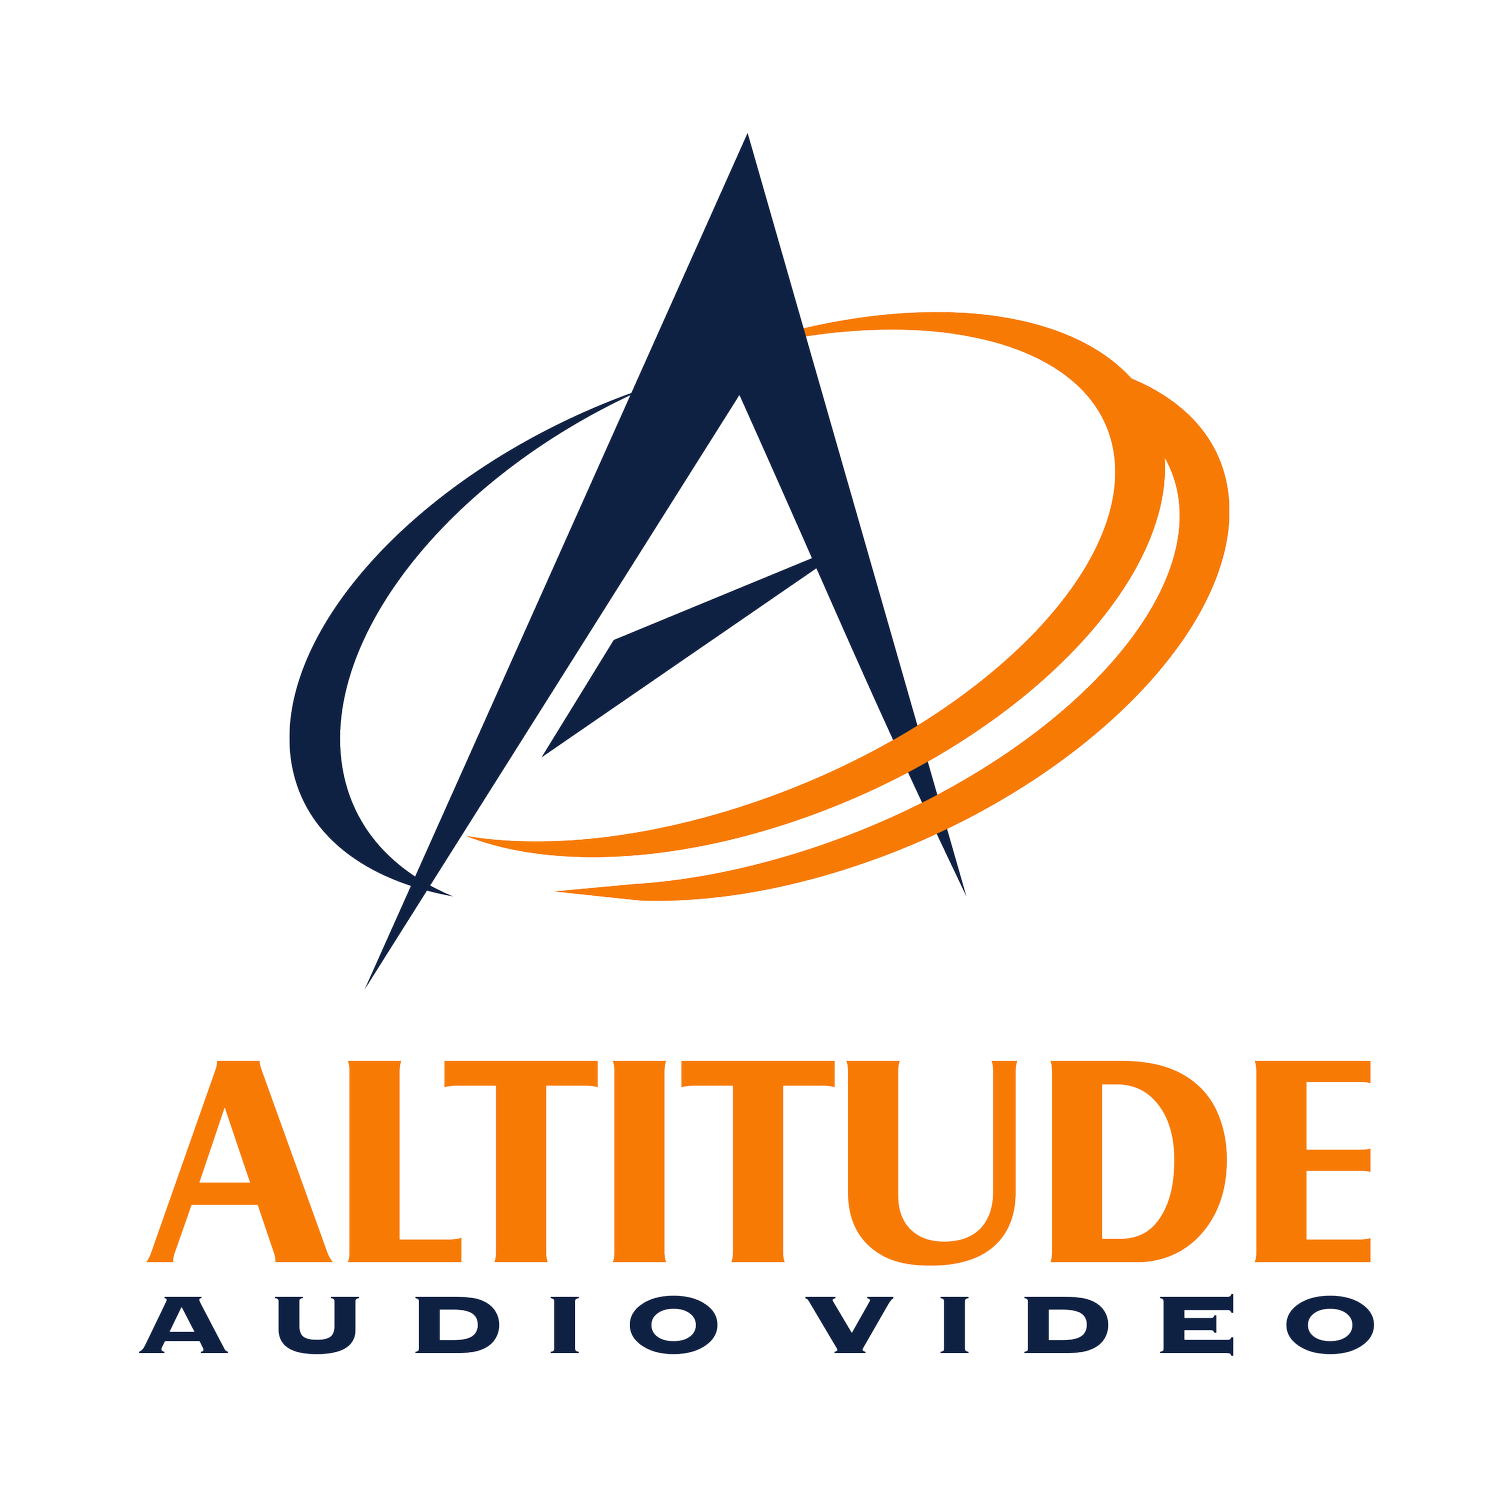 Altitude Audio Viddeo